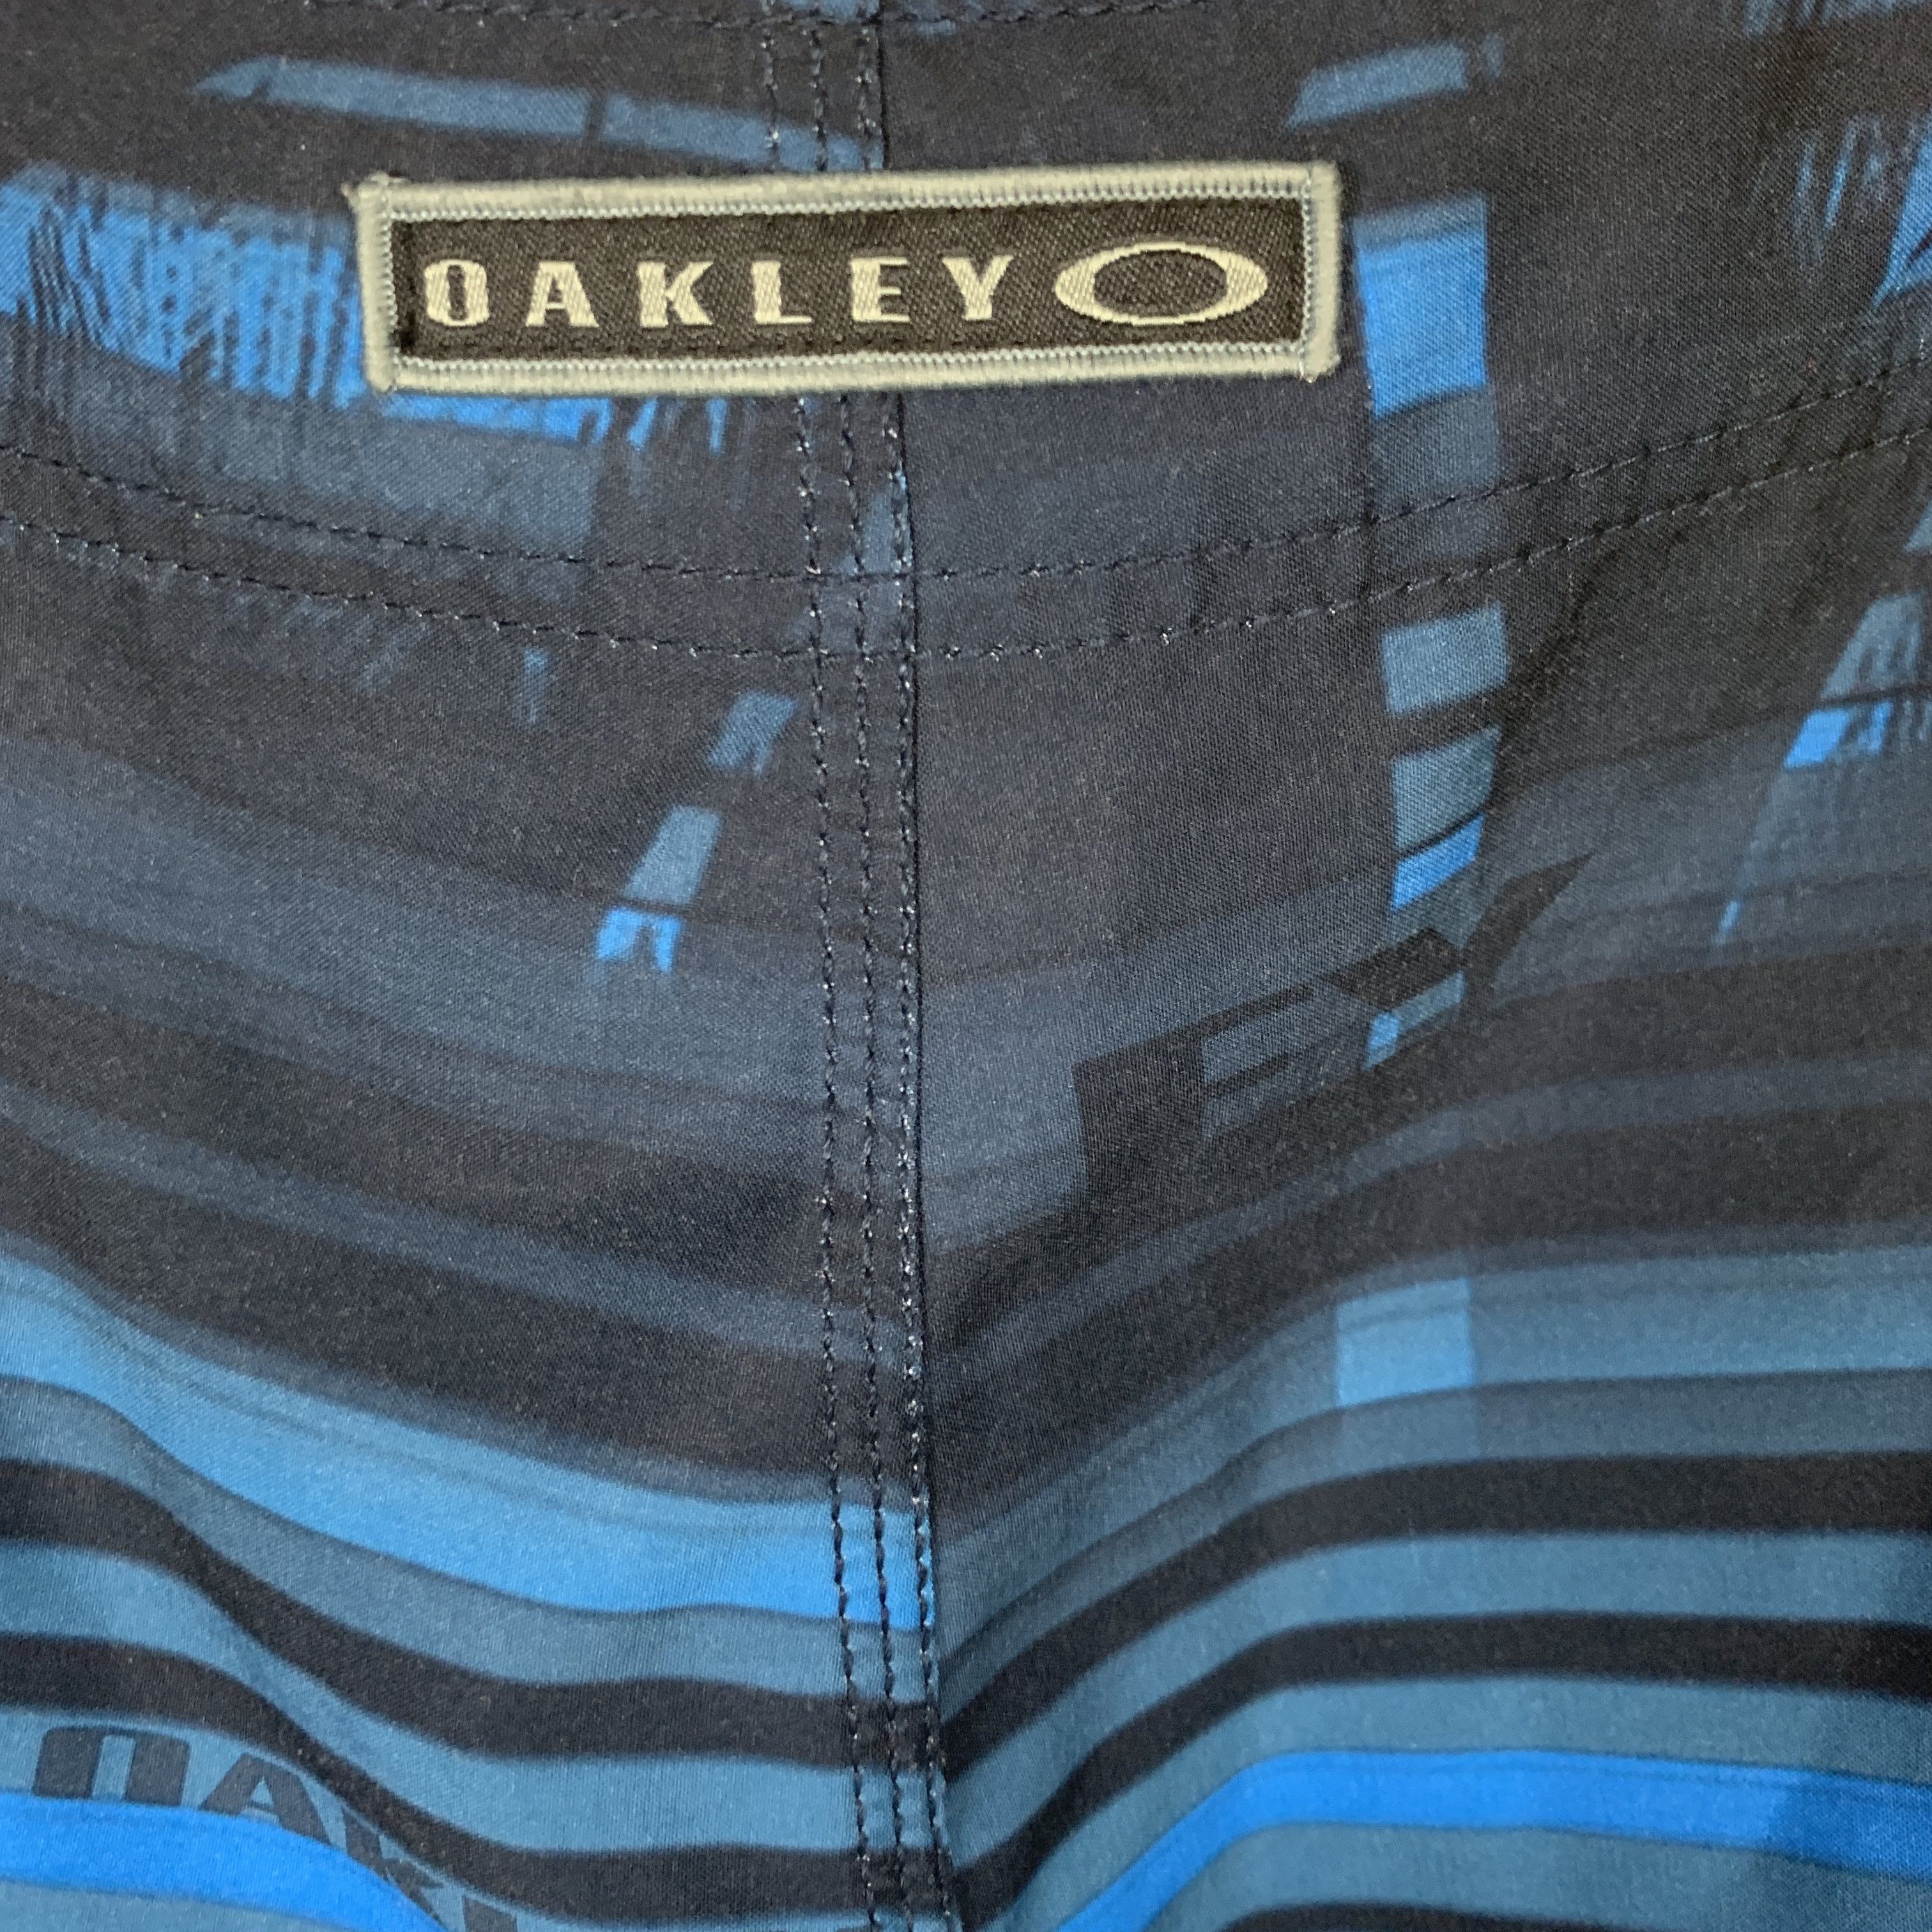 Oakley Oakley Striped Surf Board Shorts Swim Trunks 36 Size US 36 / EU 52 - 6 Thumbnail